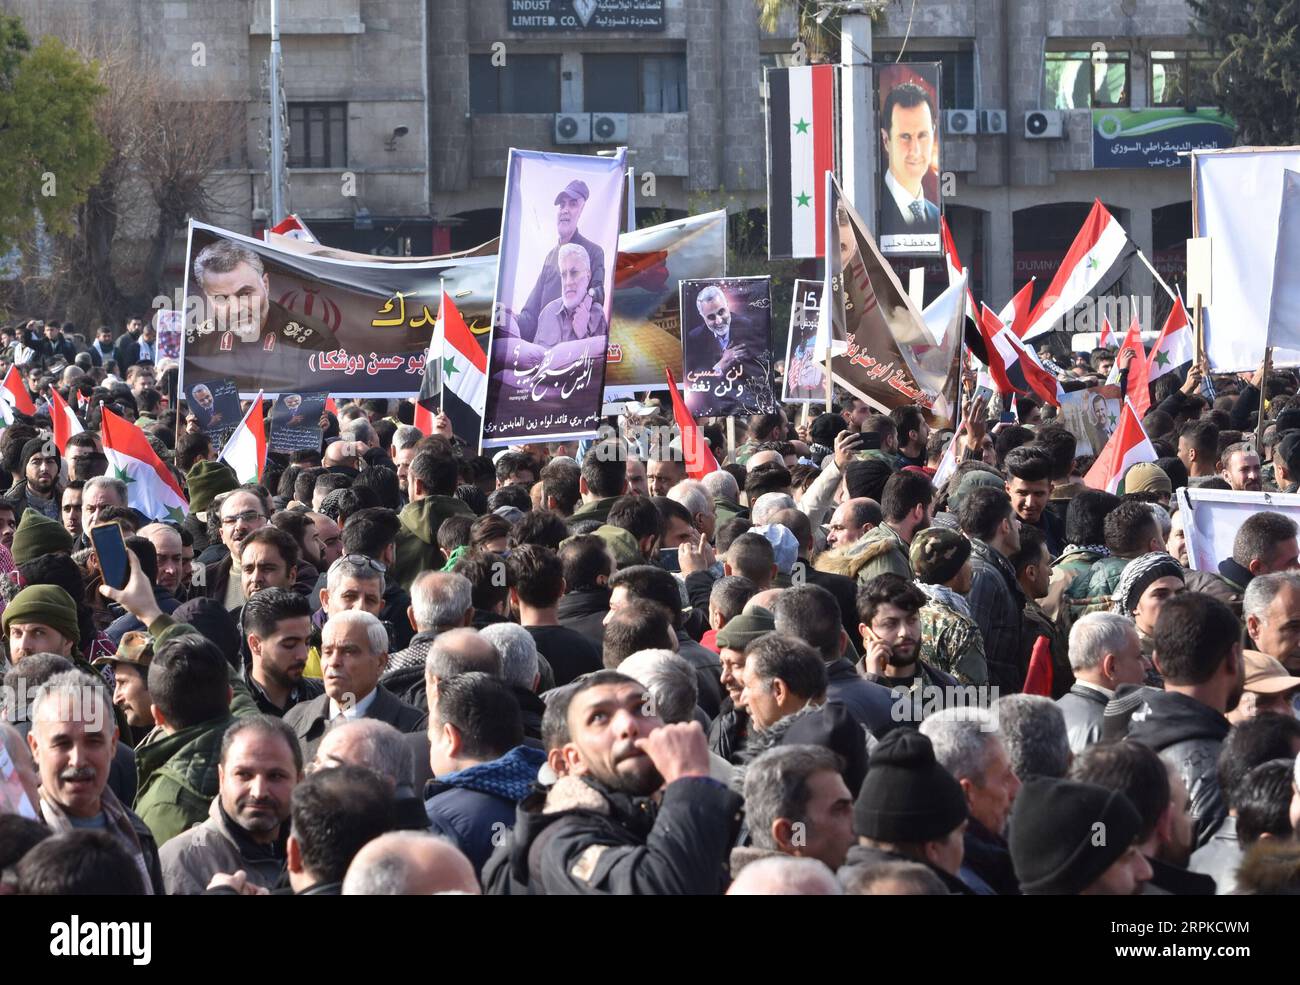 200107 -- ALEP SYRIE, 7 janvier 2020 -- des Syriens prennent part à une manifestation contre les États-Unis et en soutien au général iranien Qassem Soleimani sur la place Saadallah al-Jabiri à Alep, dans le nord de la Syrie, le 7 janvier 2020. Des centaines de Syriens se sont rassemblés mardi sur la place principale d Alep, ville du nord de la Syrie, et ont organisé une cérémonie funéraire pour Qassem Soleimani, un général iranien tué par une frappe américaine en Irak vendredi. SYRIE-ALEP-COMMANDANT IRANIEN-DEUIL-PROTESTATION STRINGER PUBLICATIONXNOTXINXCHN Banque D'Images